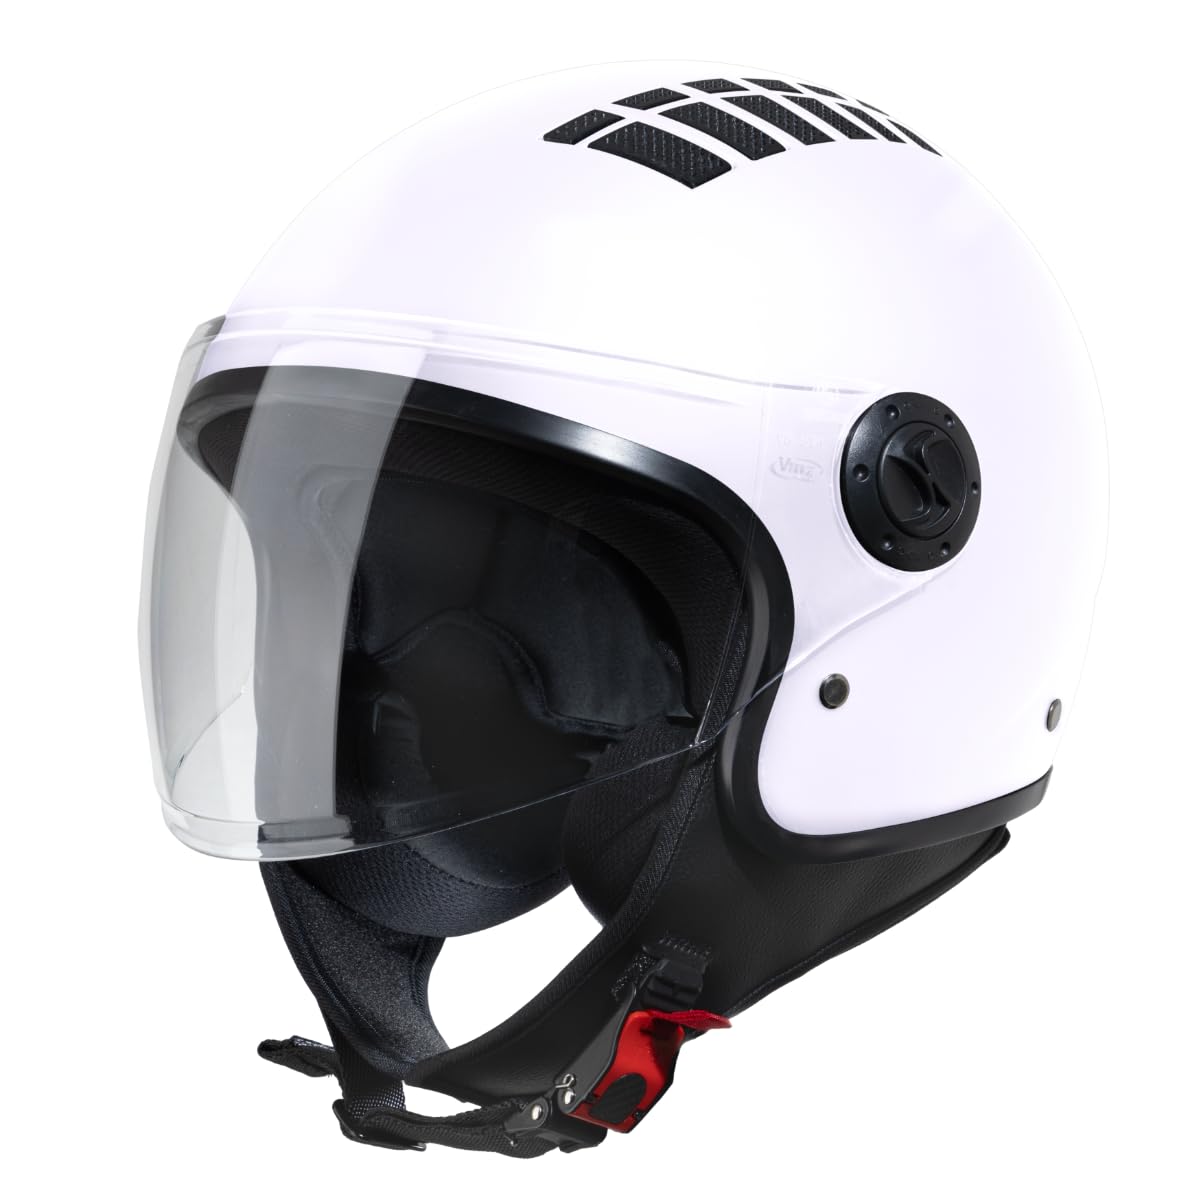 VINZ Como Jethelm mit Visier ECE 22.06 Zertifiziert | Roller Helm Mopedhelm Ideal Für Motoroller & Vespa | Herren und Damen | Komfortabler Motorradhelm XS-XL | Weiß